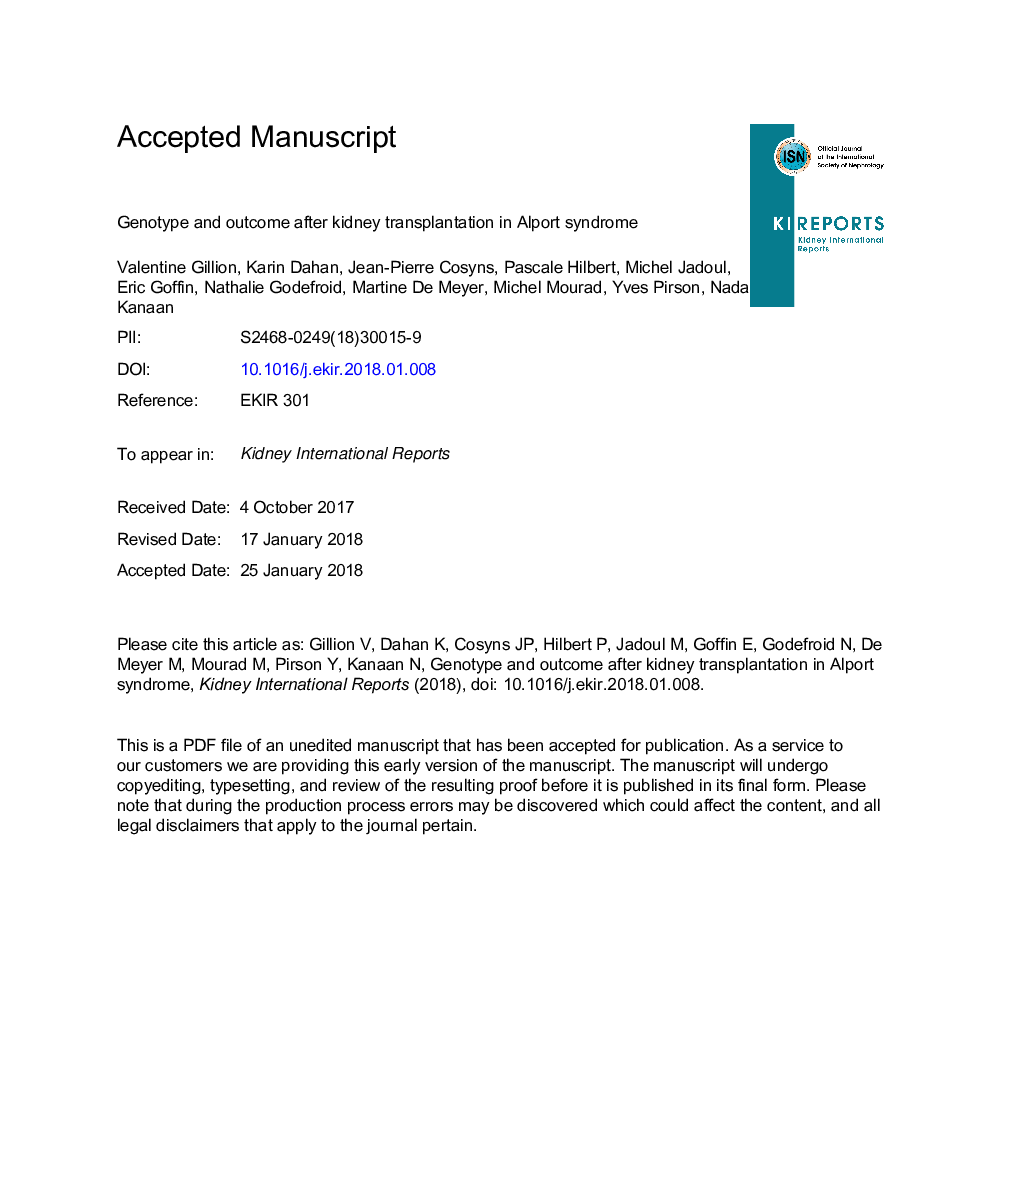 ژنوتیپ و نتیجه پس از پیوند کلیه در سندرم آلپورت 